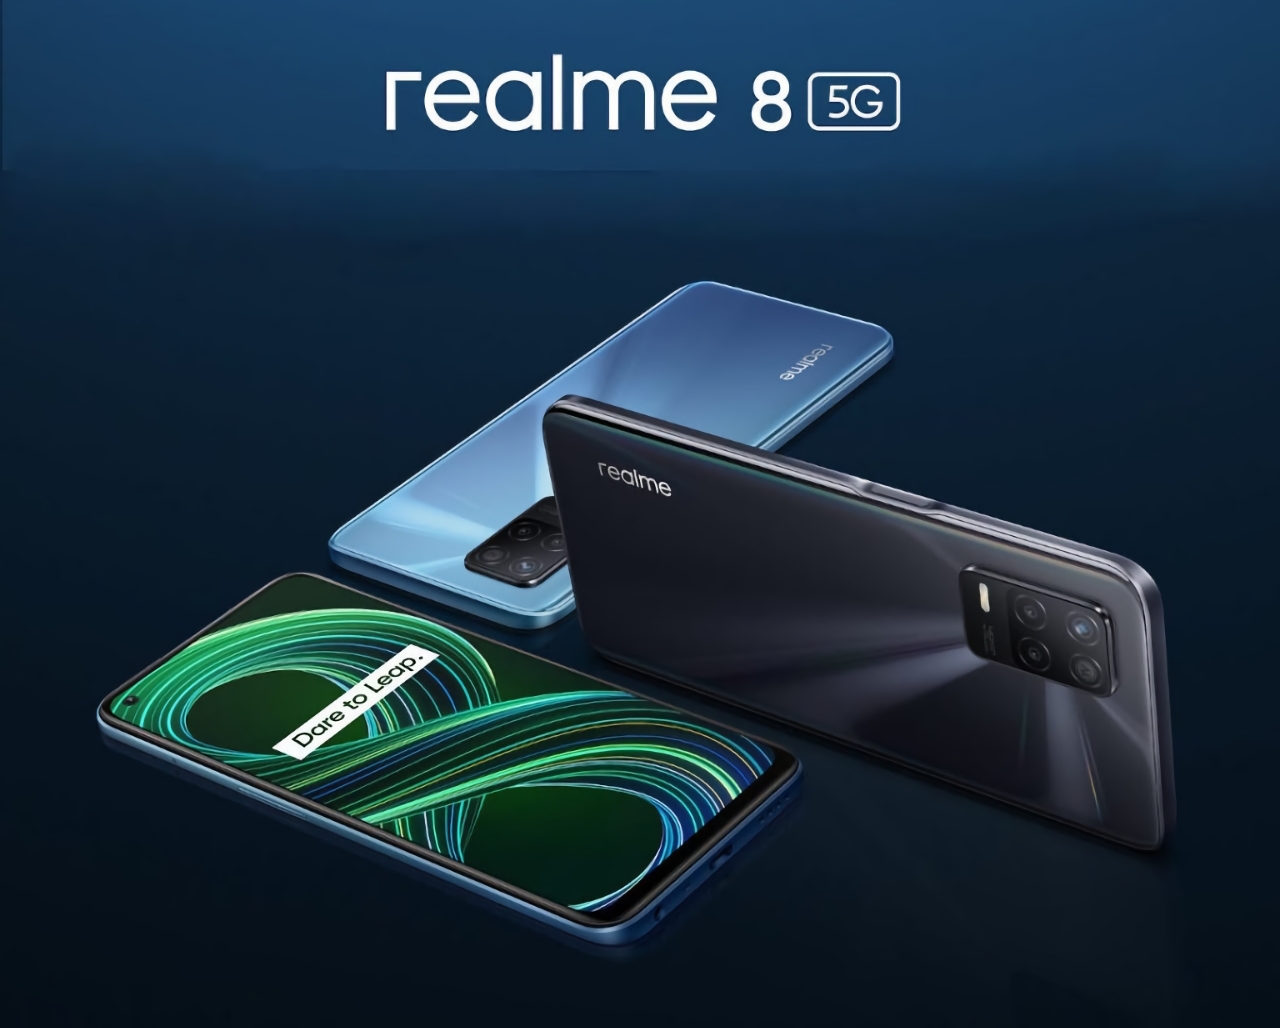 Offiziell: Realme 8 5G mit MediaTek Dimensity 700 Chip wird am 21. April debütieren